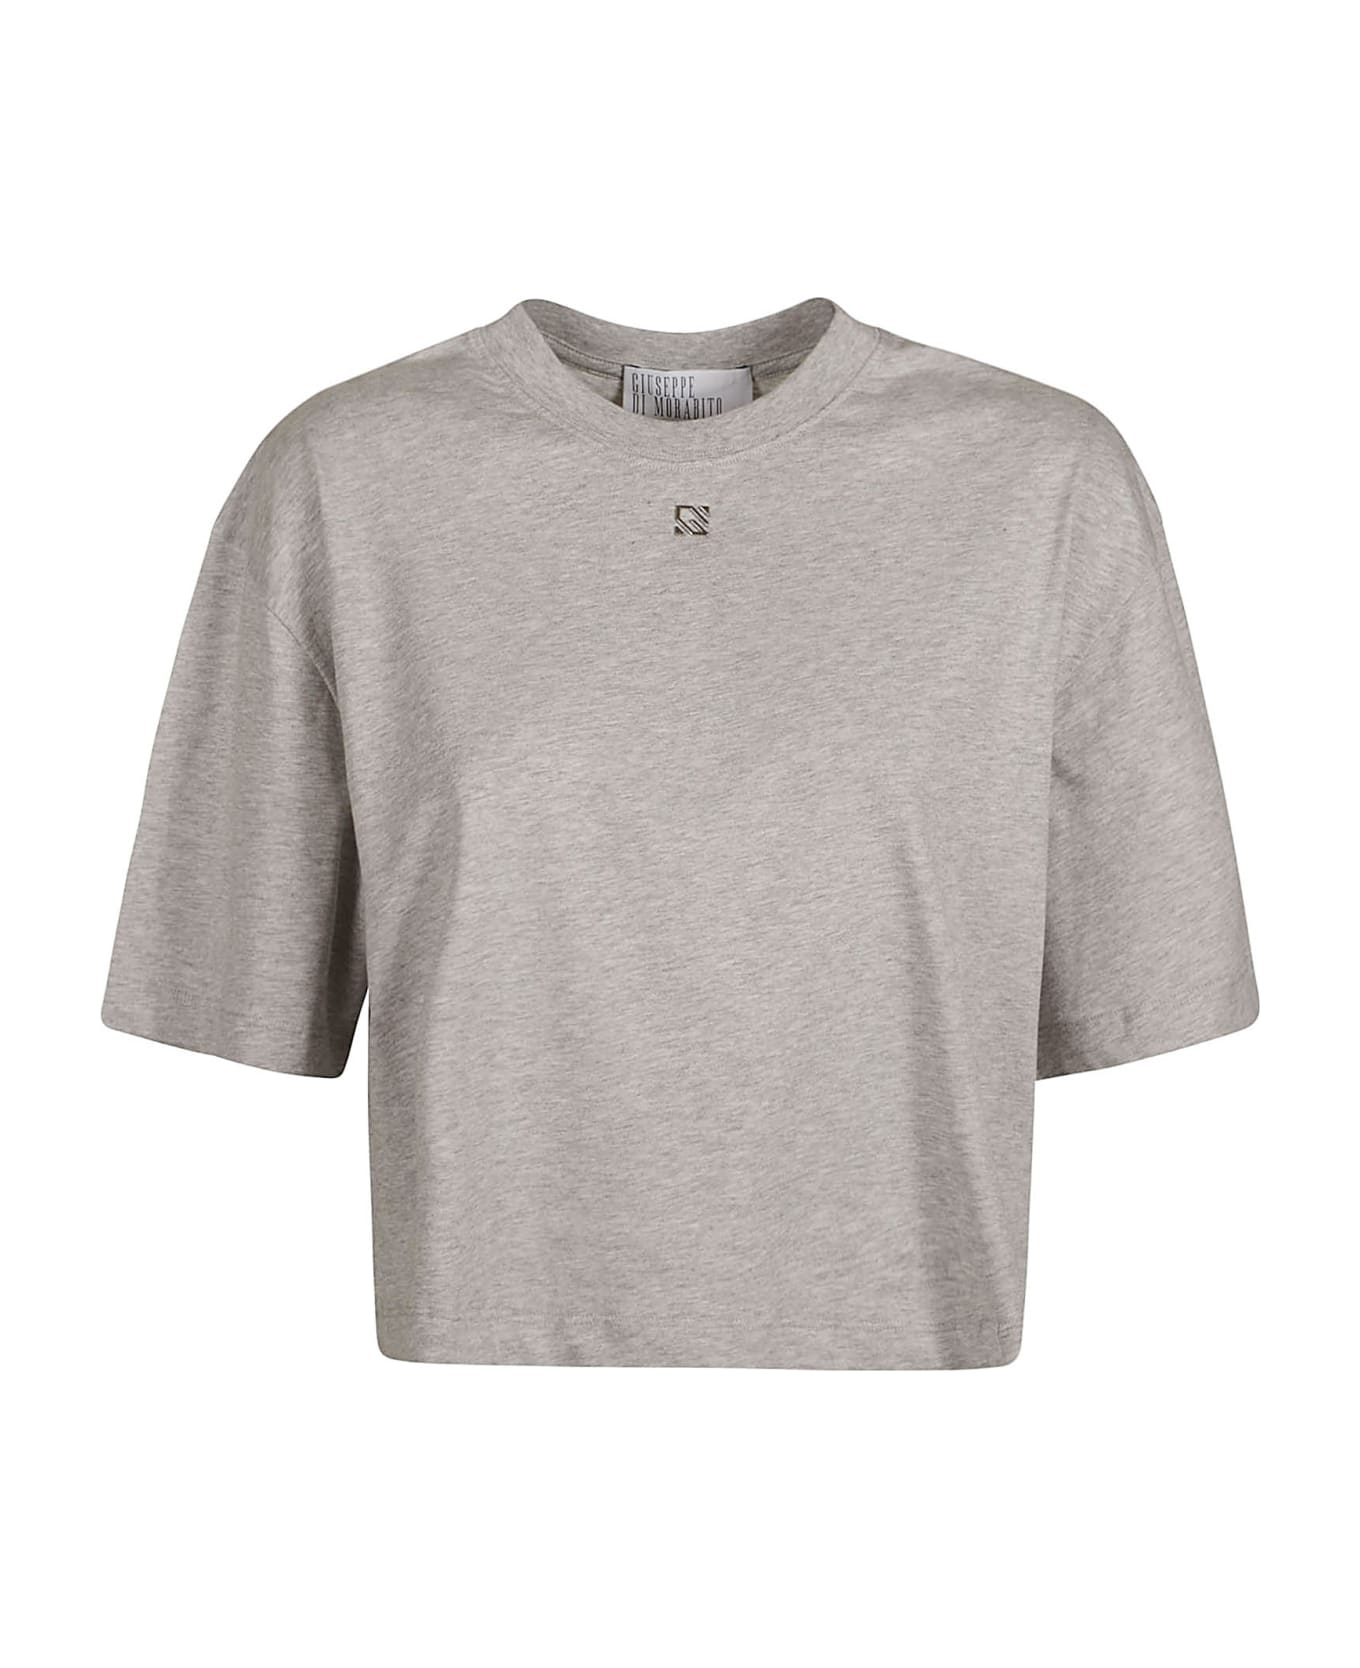 Giuseppe di Morabito Crystal Sleeves T-shirt - Grey